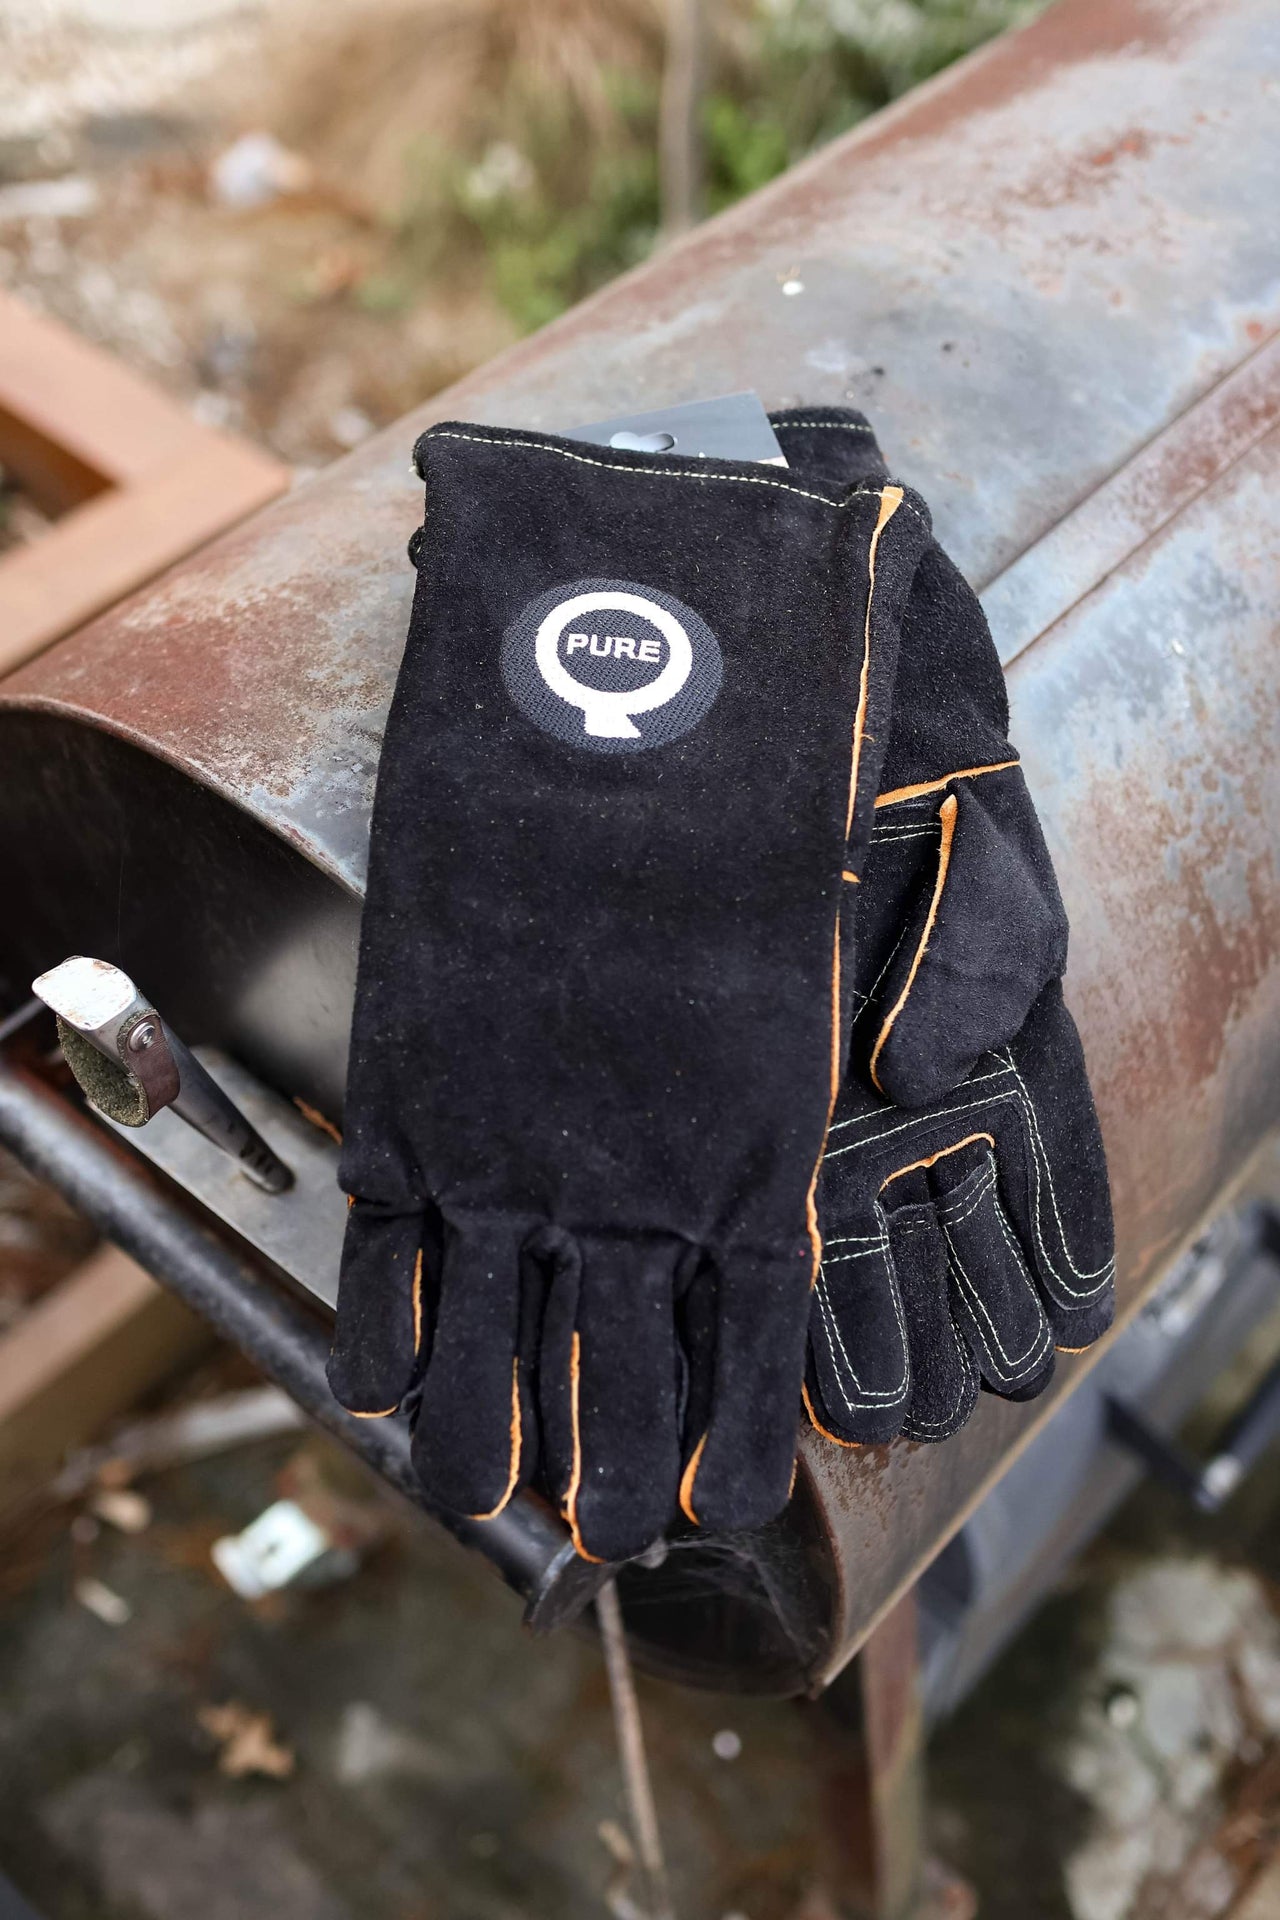 PureQ "Rawhide" High Temp Leather BBQ Gloves